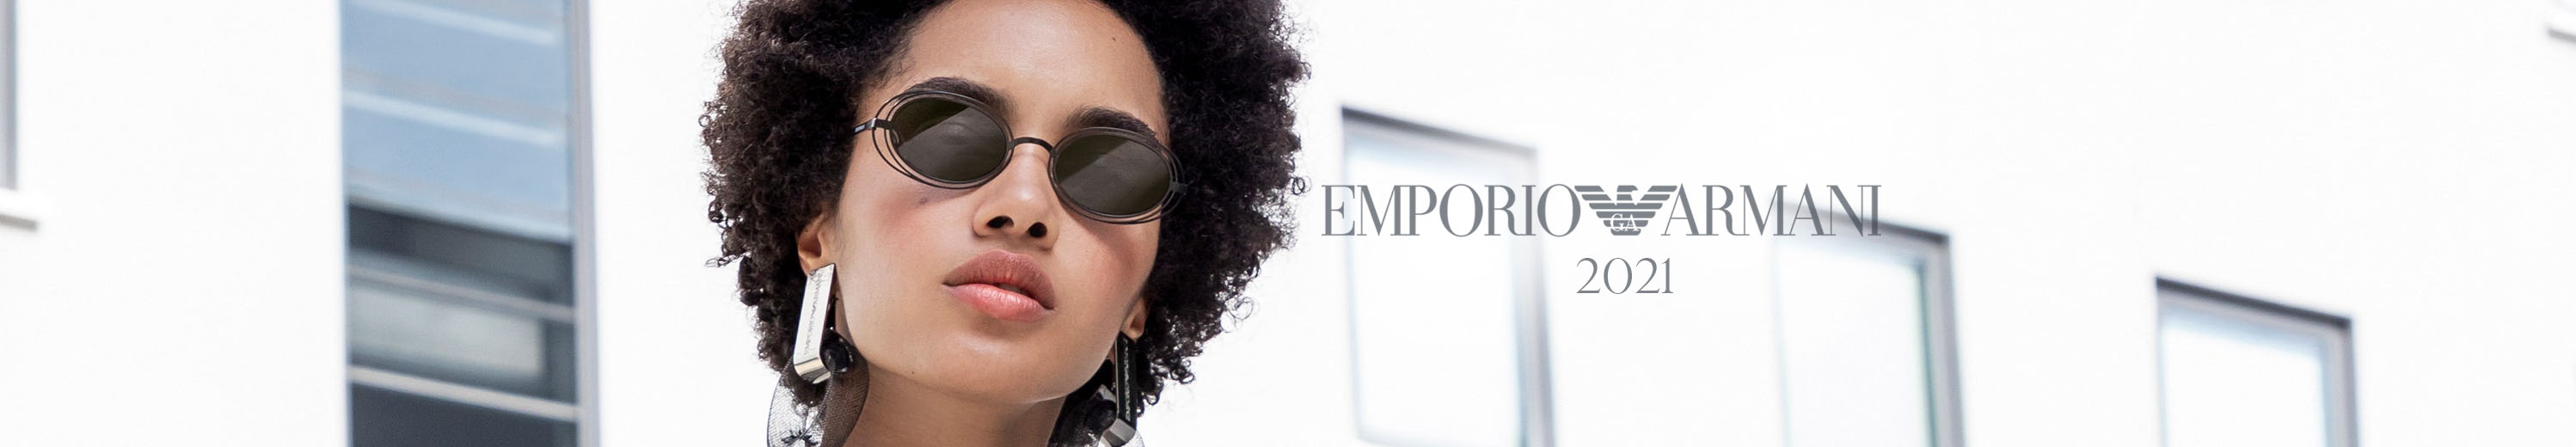 Emporio Armani 2021 Spring / Summer Eyewear Collection